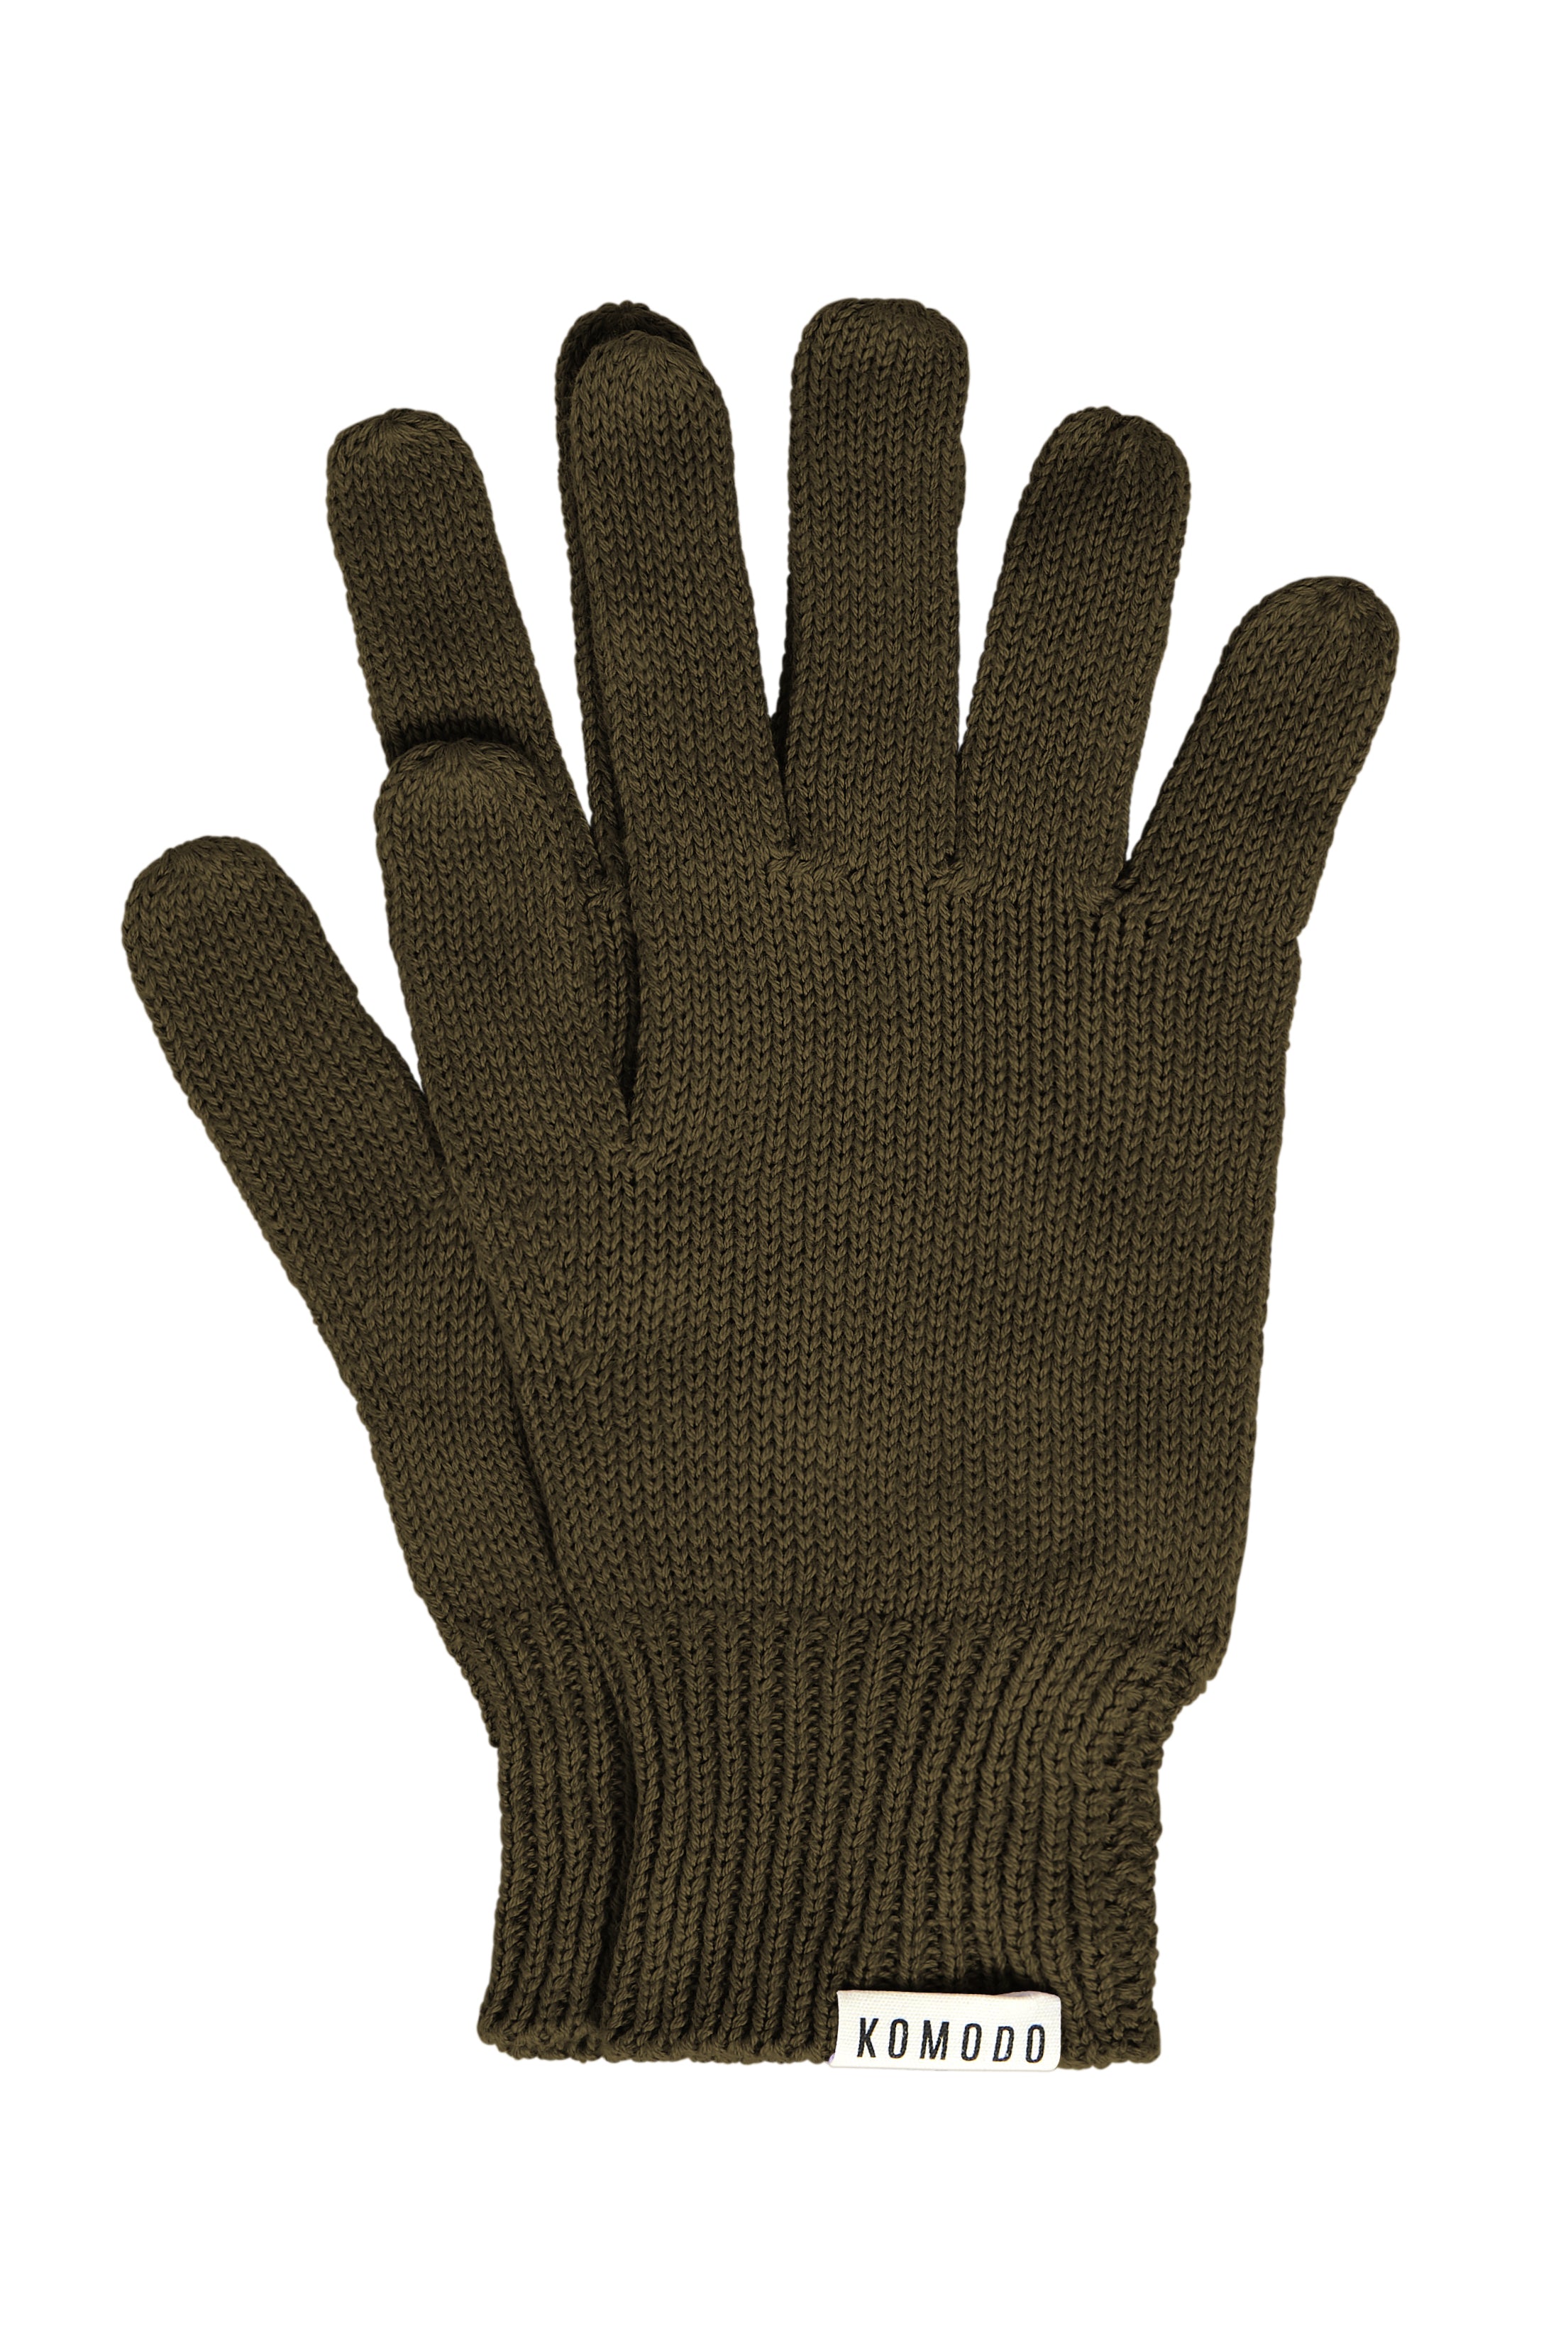 Komodo City Gloves - Khaki